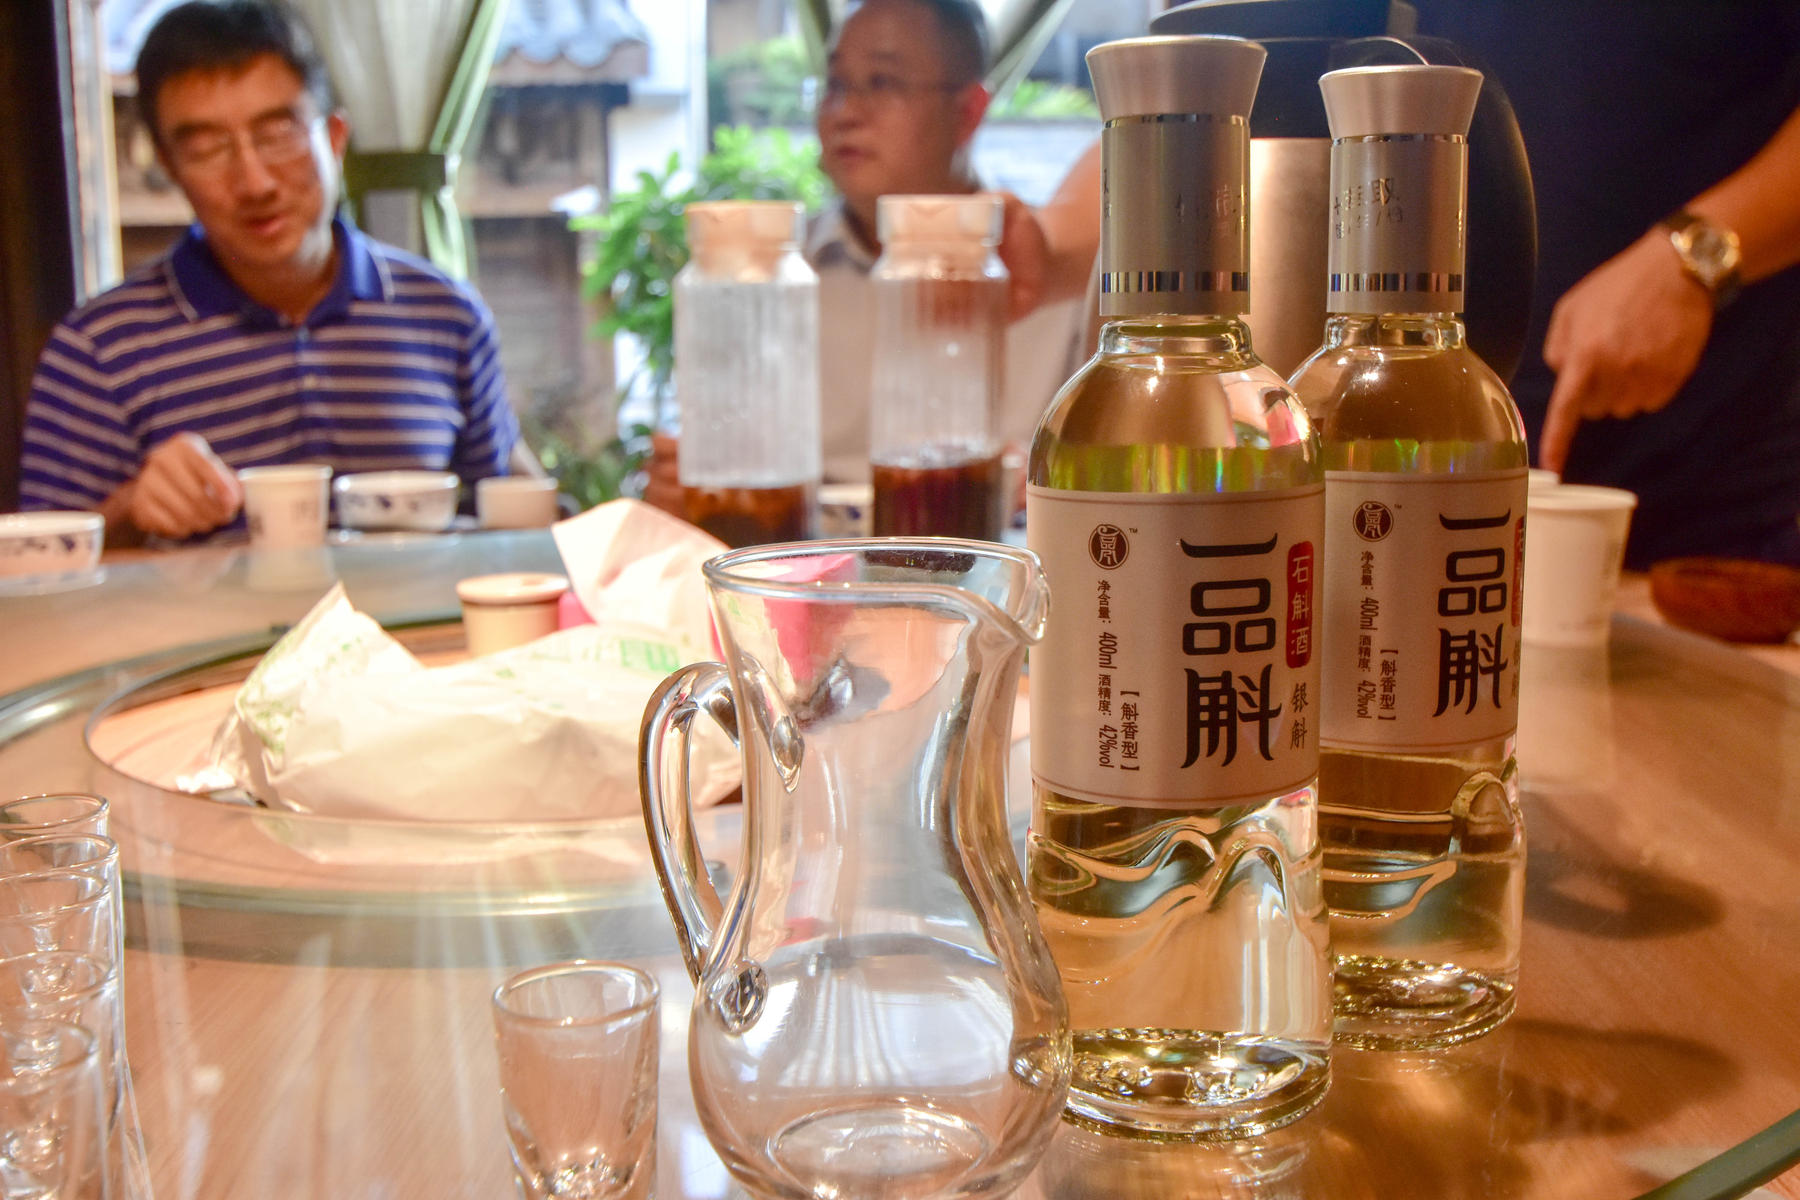 中国的酒文化在饭桌上可谓是体现得淋漓尽致,但友谊不也就是在一次次